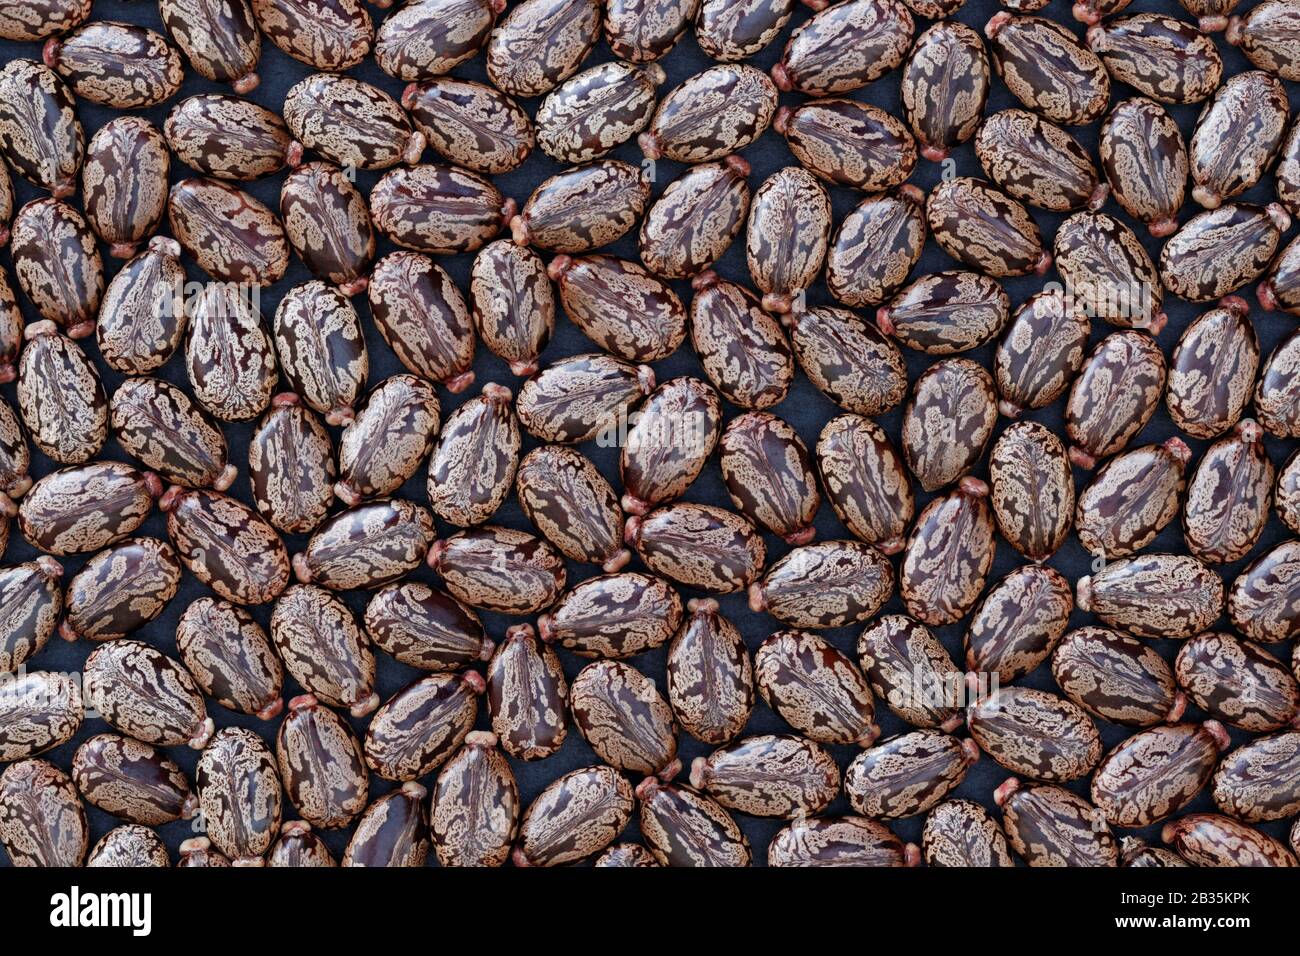 Samen von Castor Bean (Ricinus communis) - Hintergrund: Anhäufung von Samen der Kastenbohne (Ricinus communis) auf dunklem Hintergrund Stockfoto